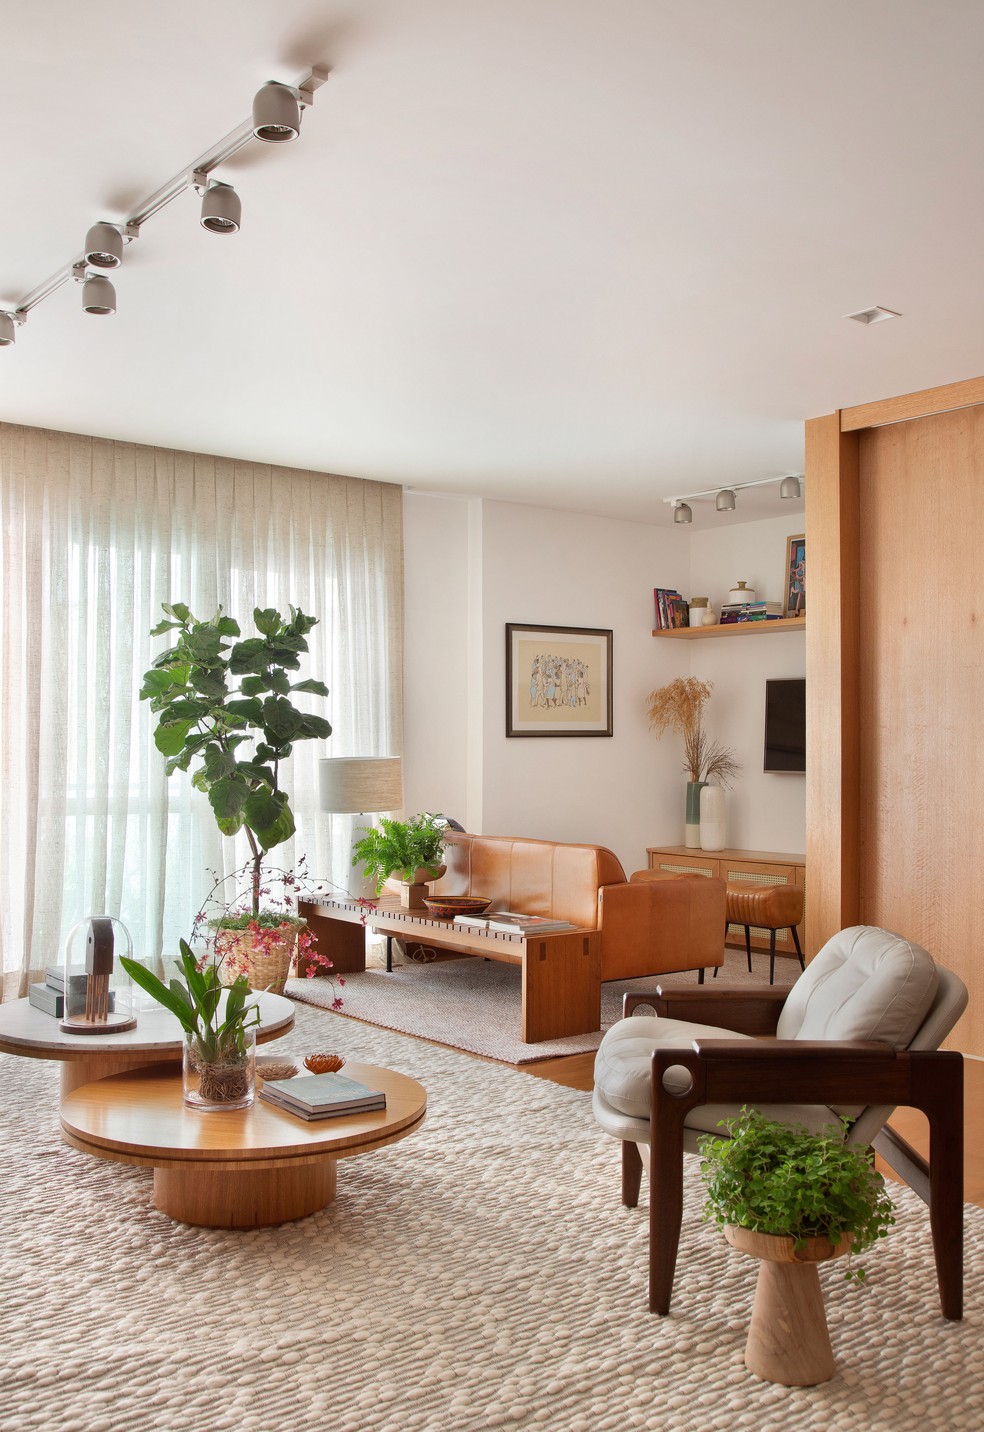 Sala de estar e para a televisão foram integradas neste projeto  — Foto: Raiana Medina